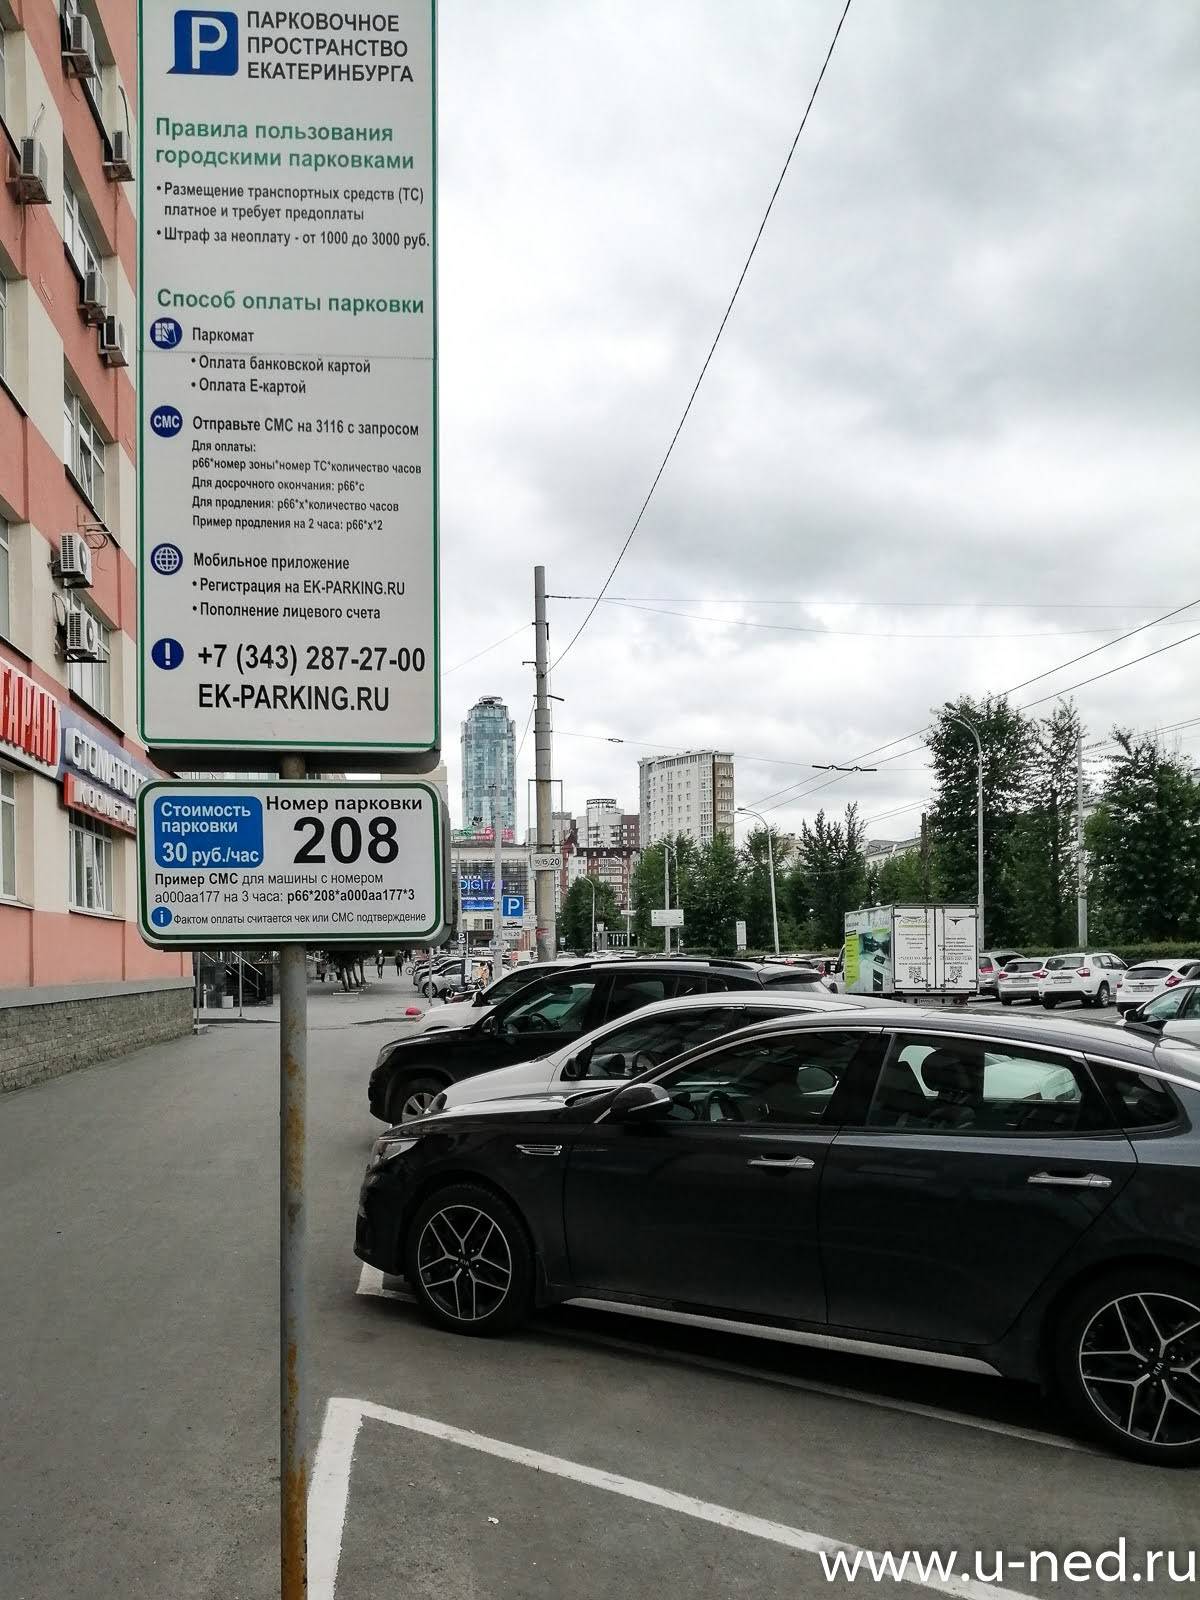 Правила парковки 2020 в украине – где парковать авто и как